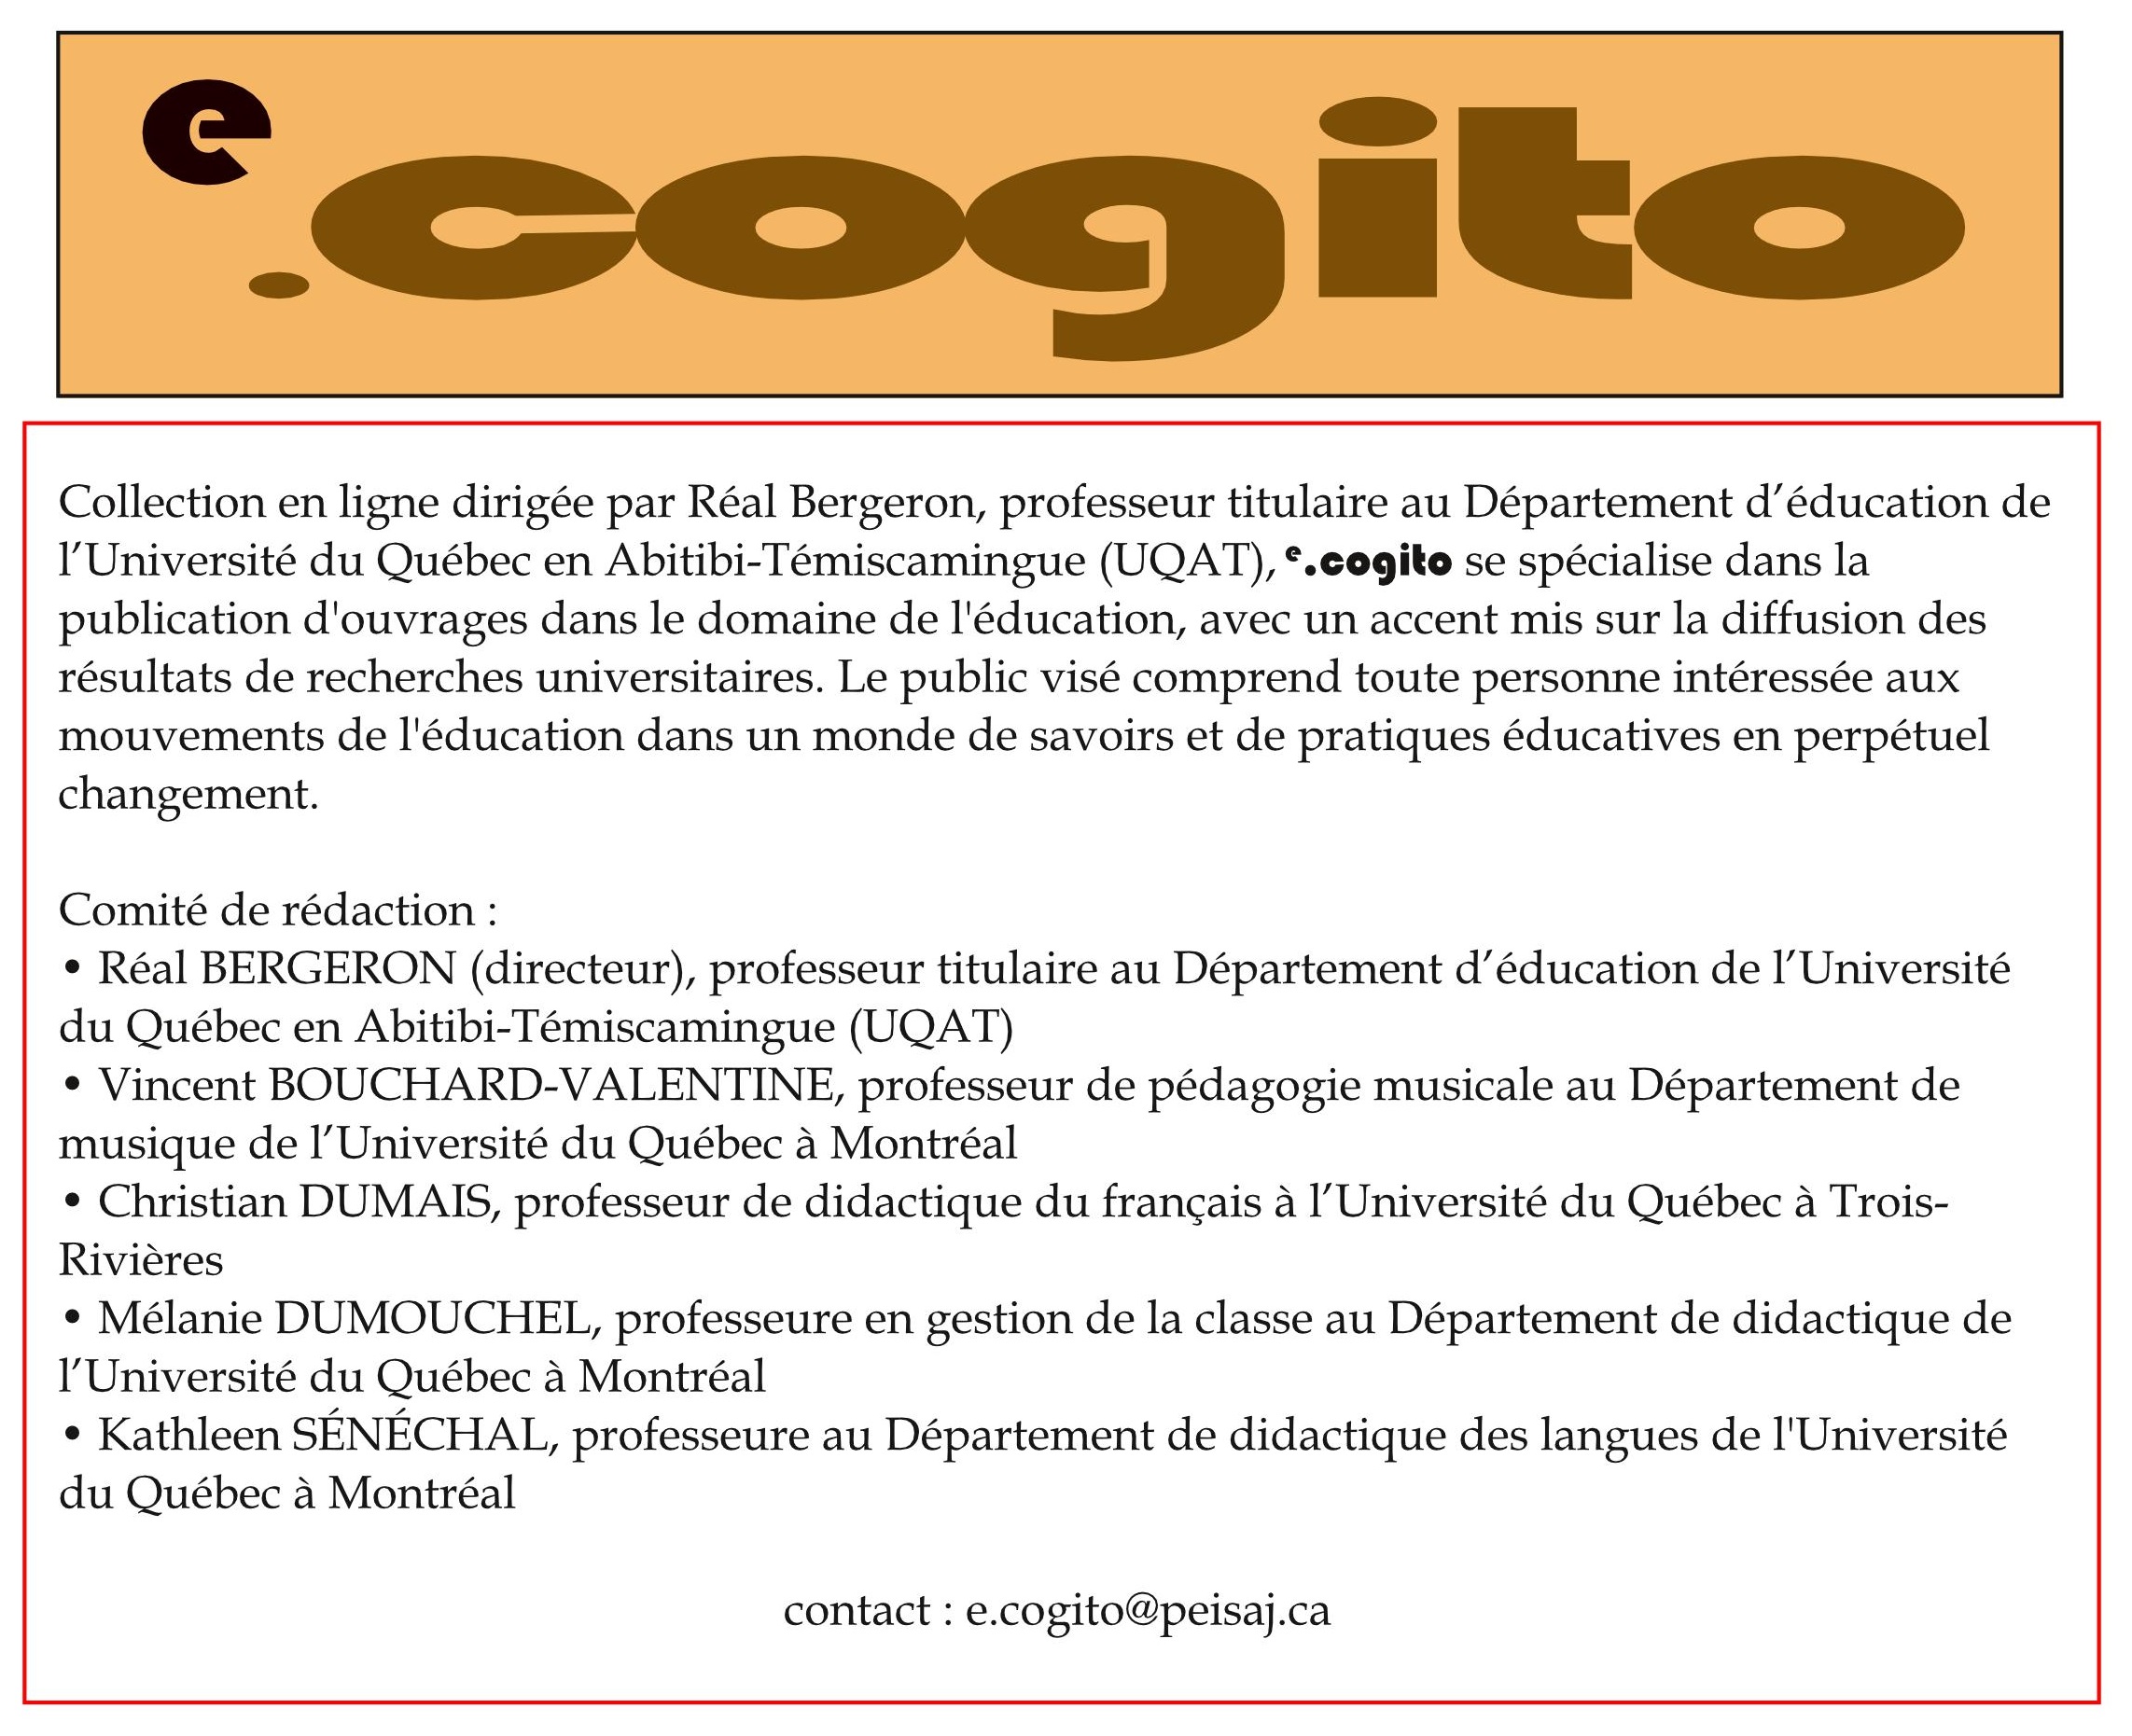 e_cogito_presentation_page_accueil-page001.jpg